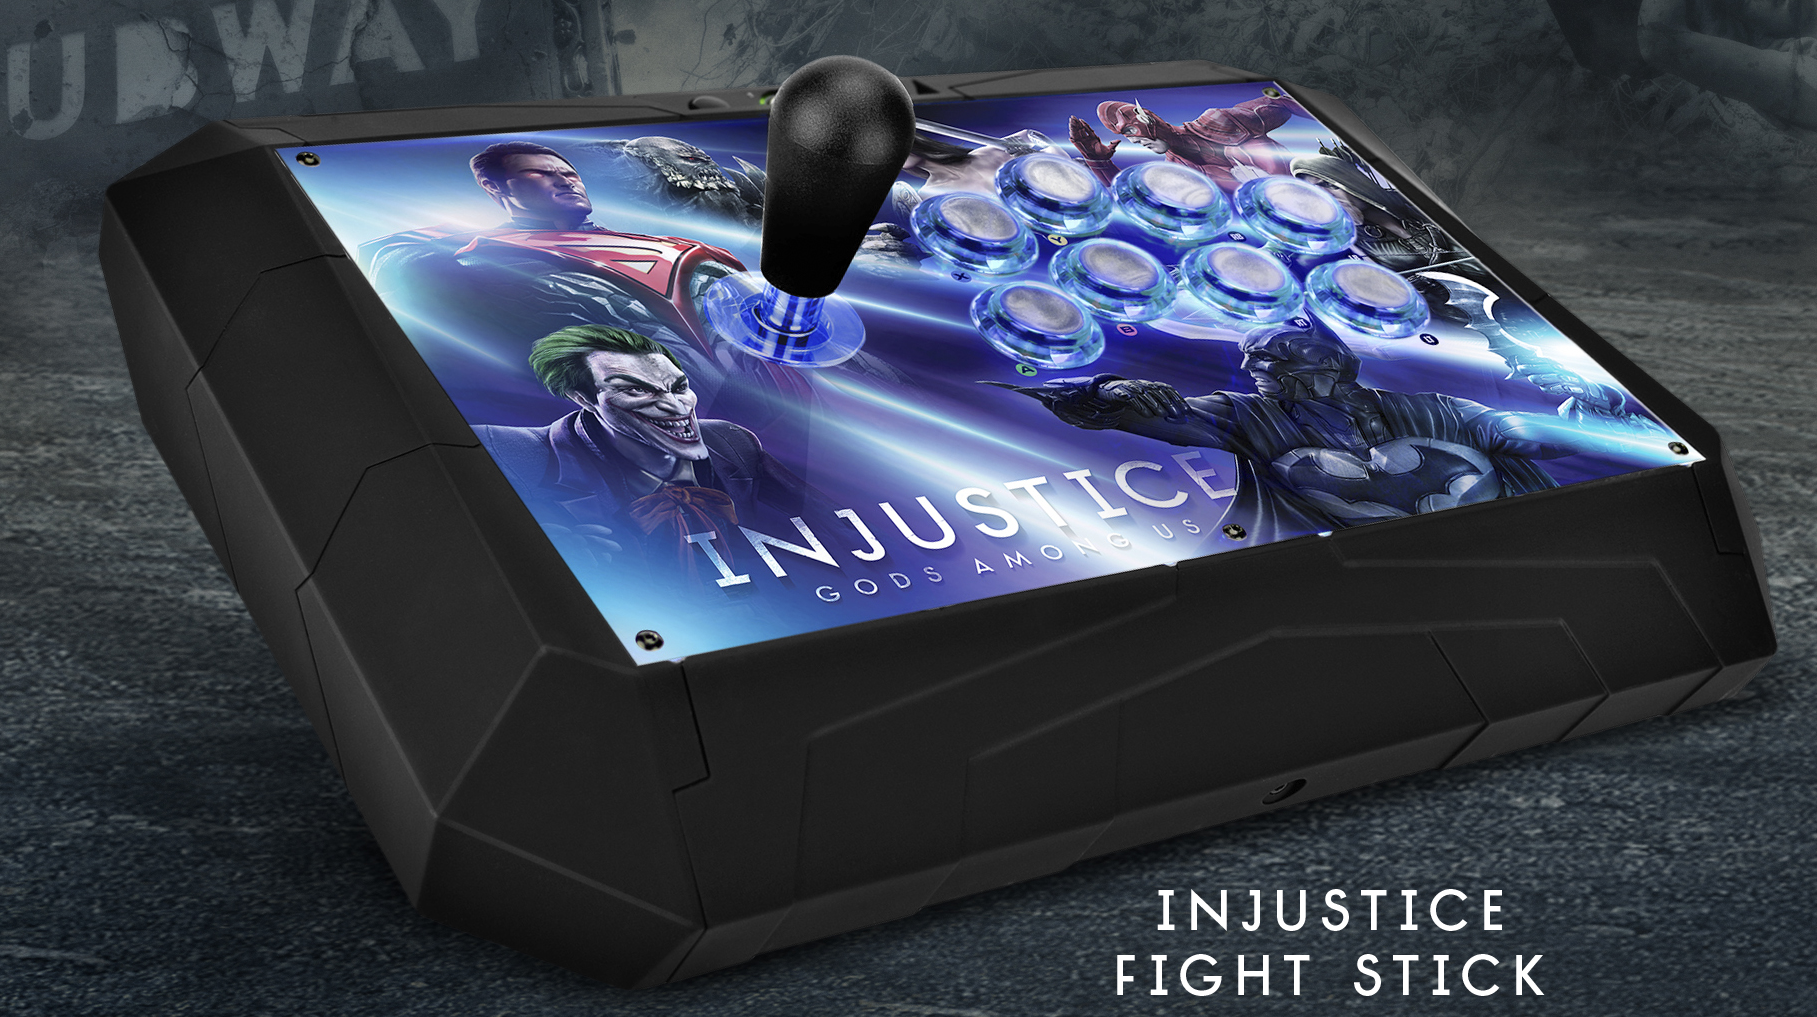 Injustice: Gods Among Us - Xbox 360 [Digital]